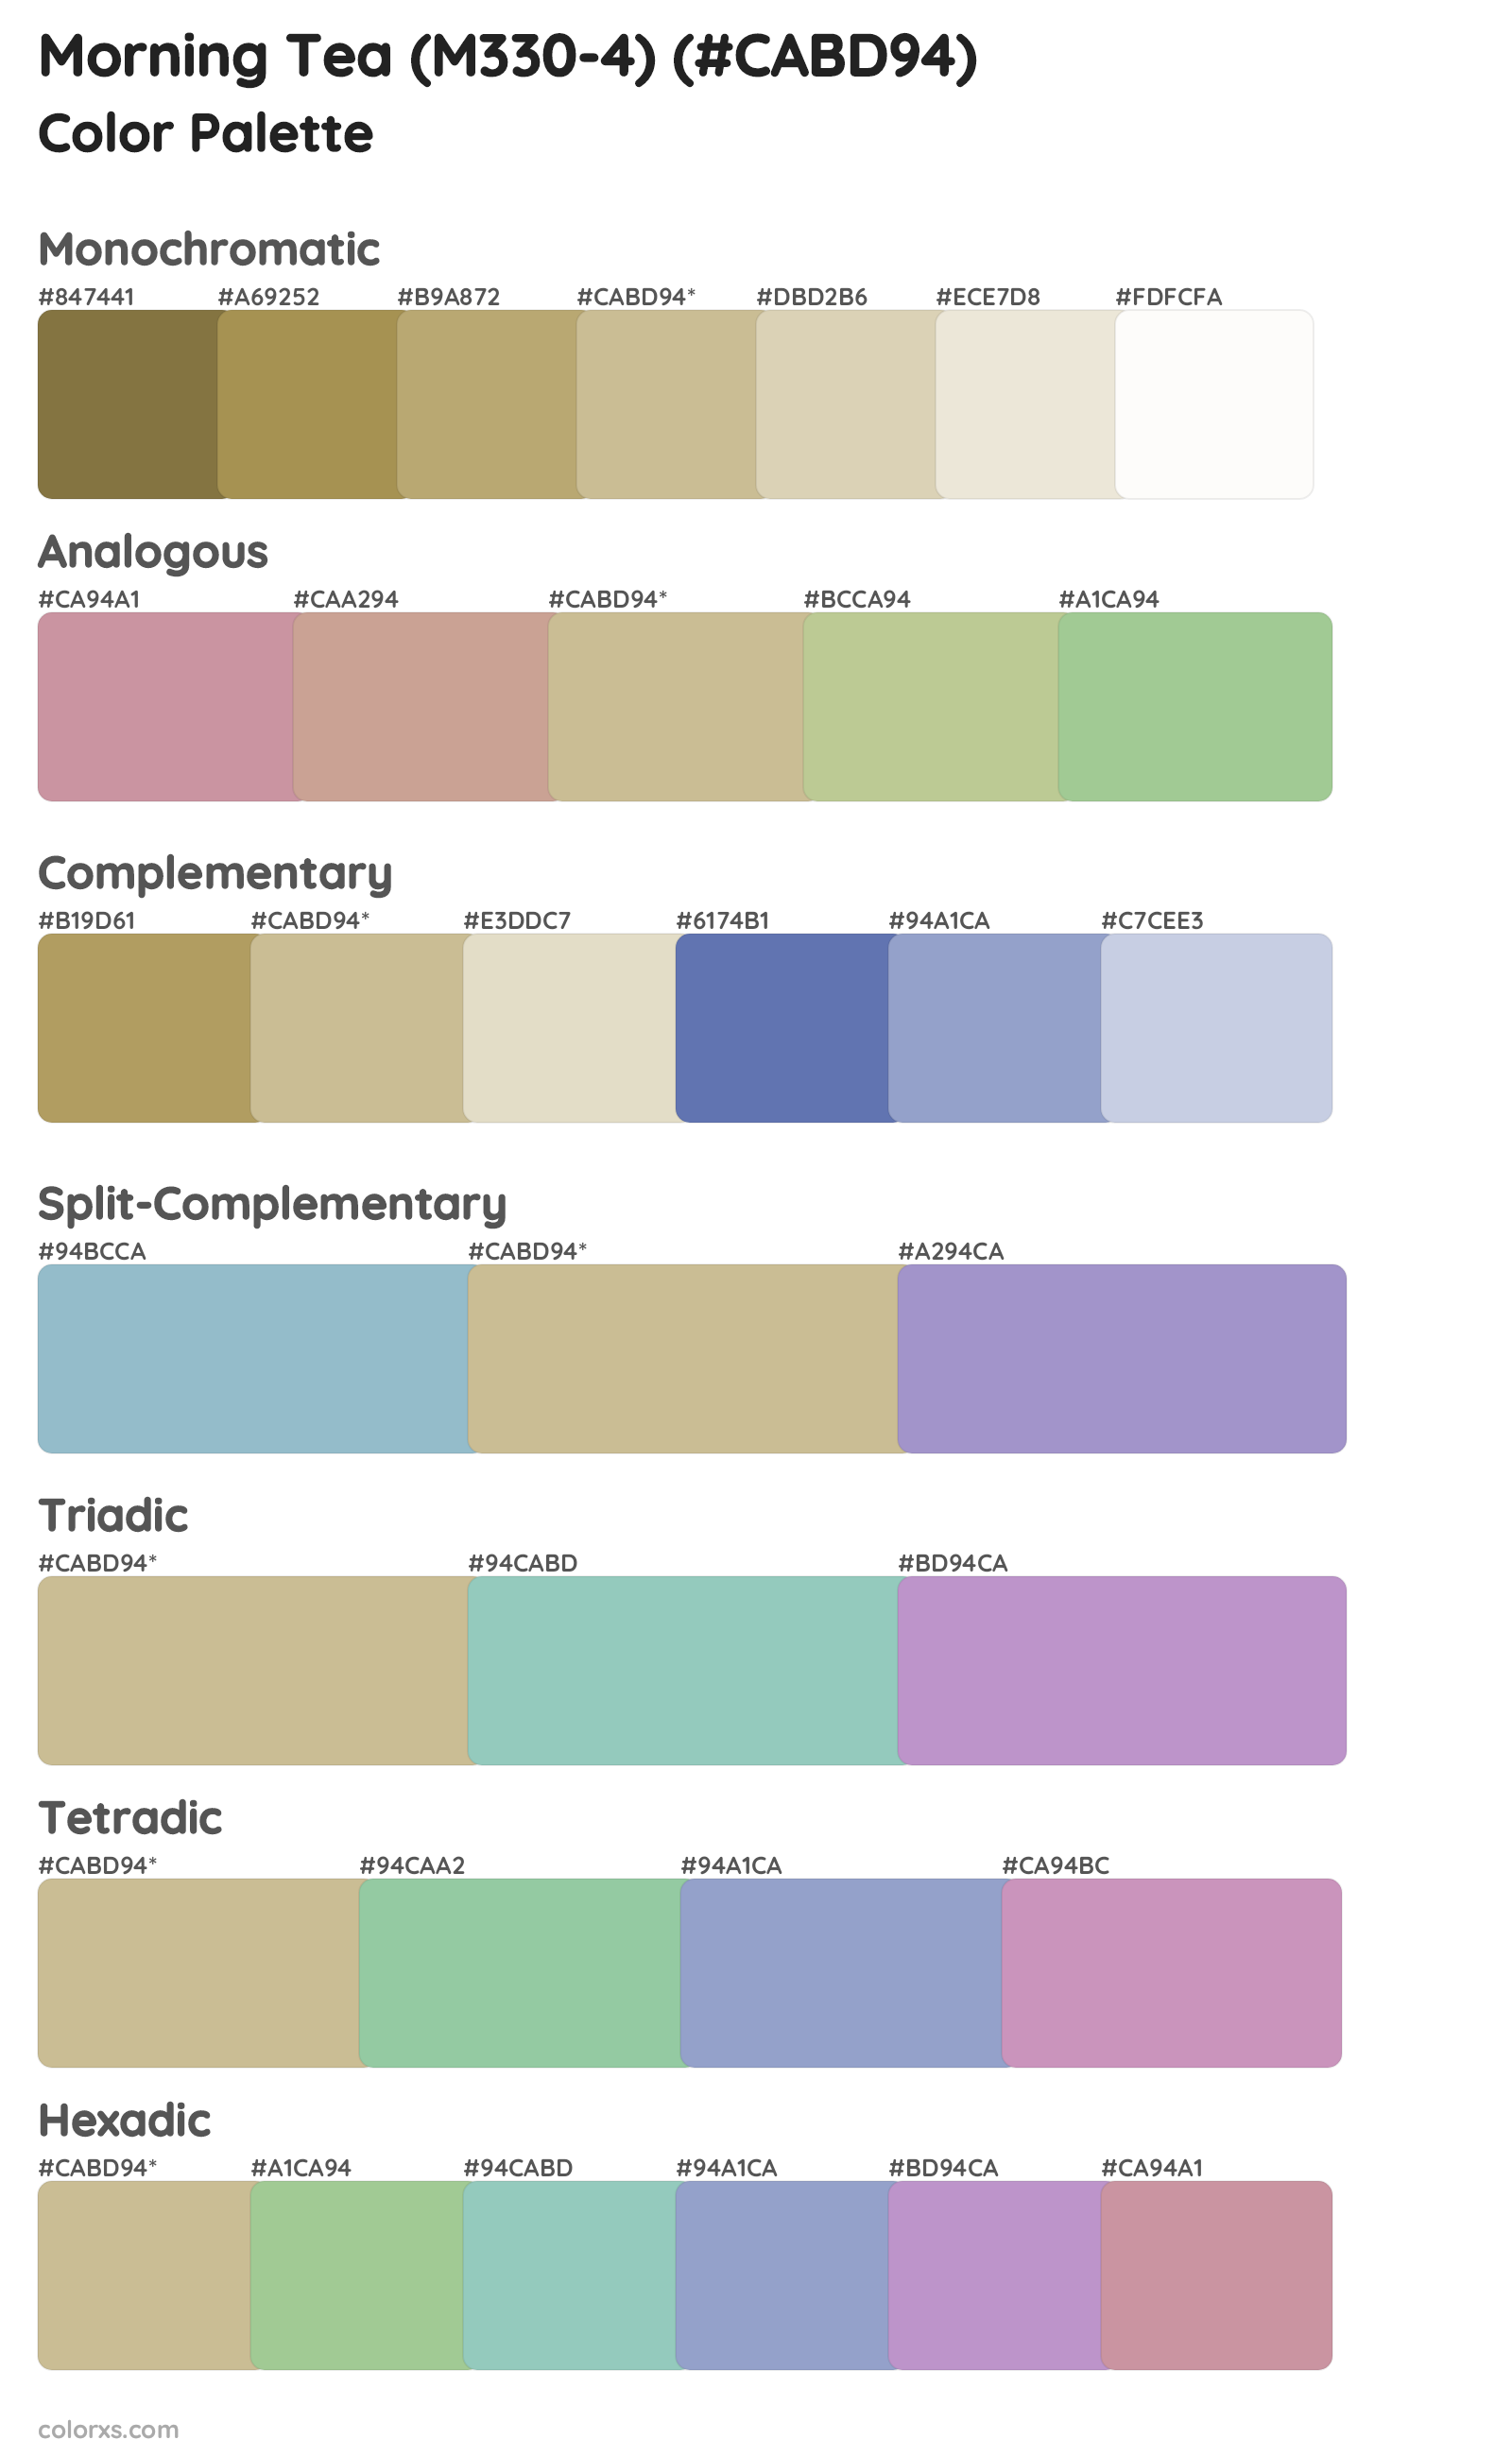 Morning Tea (M330-4) Color Scheme Palettes